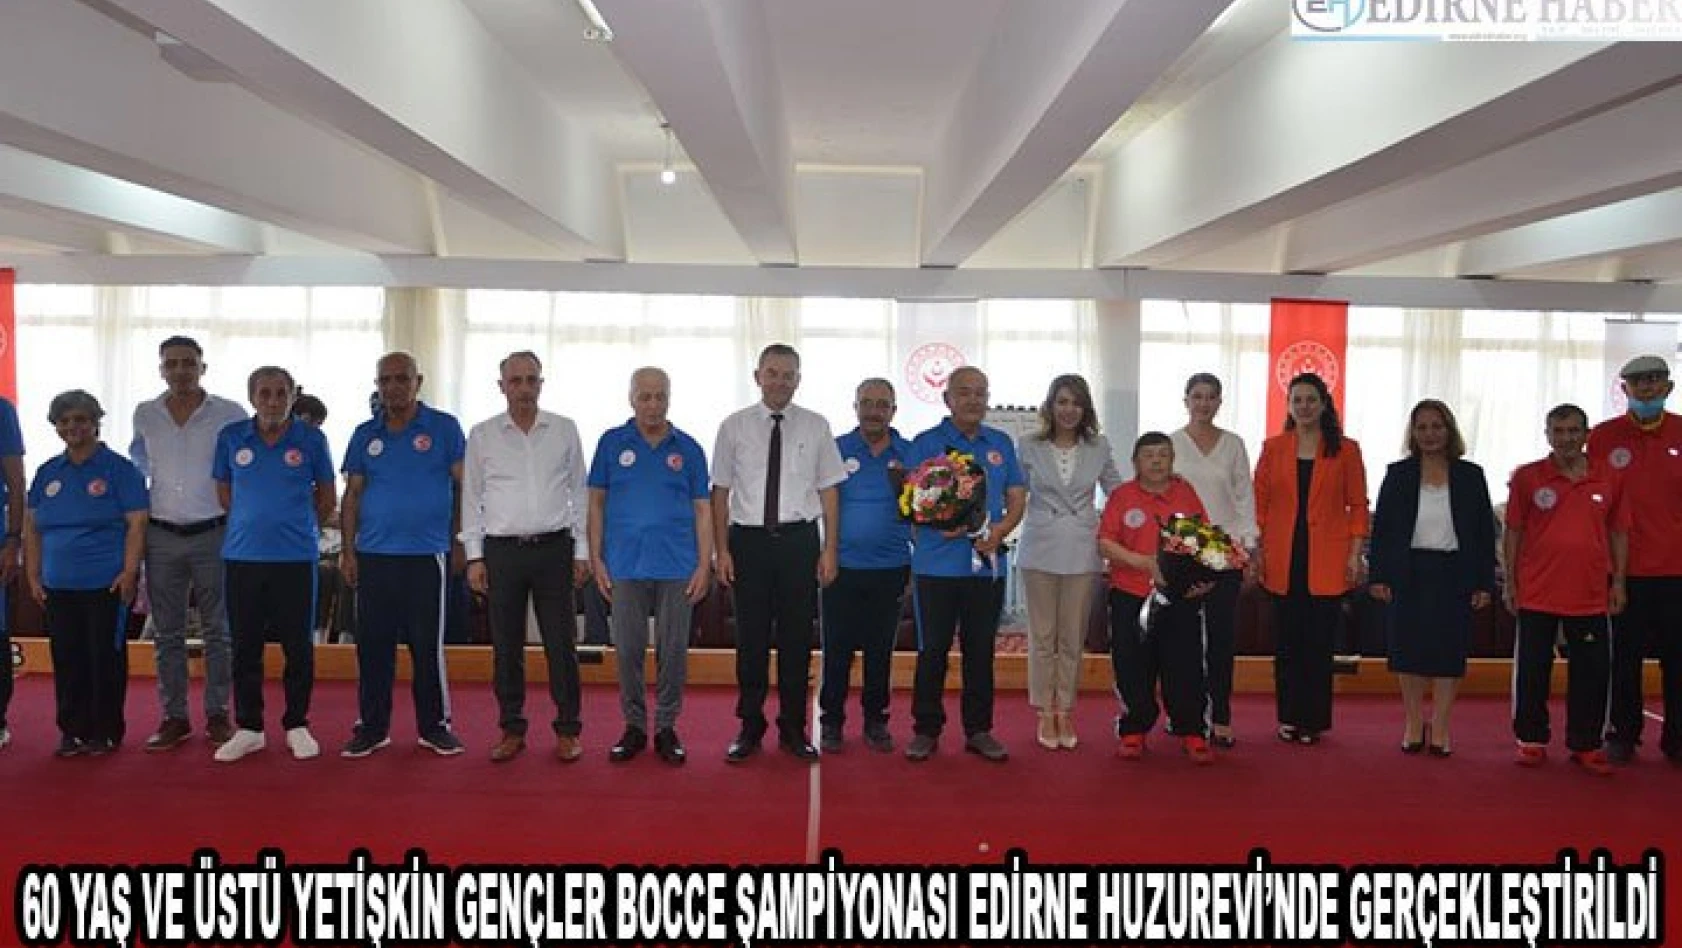 60 Yaş ve Üstü Yetişkin Gençler Bocce Şampiyonası Edirne Huzurevi'nde gerçekleştirildi